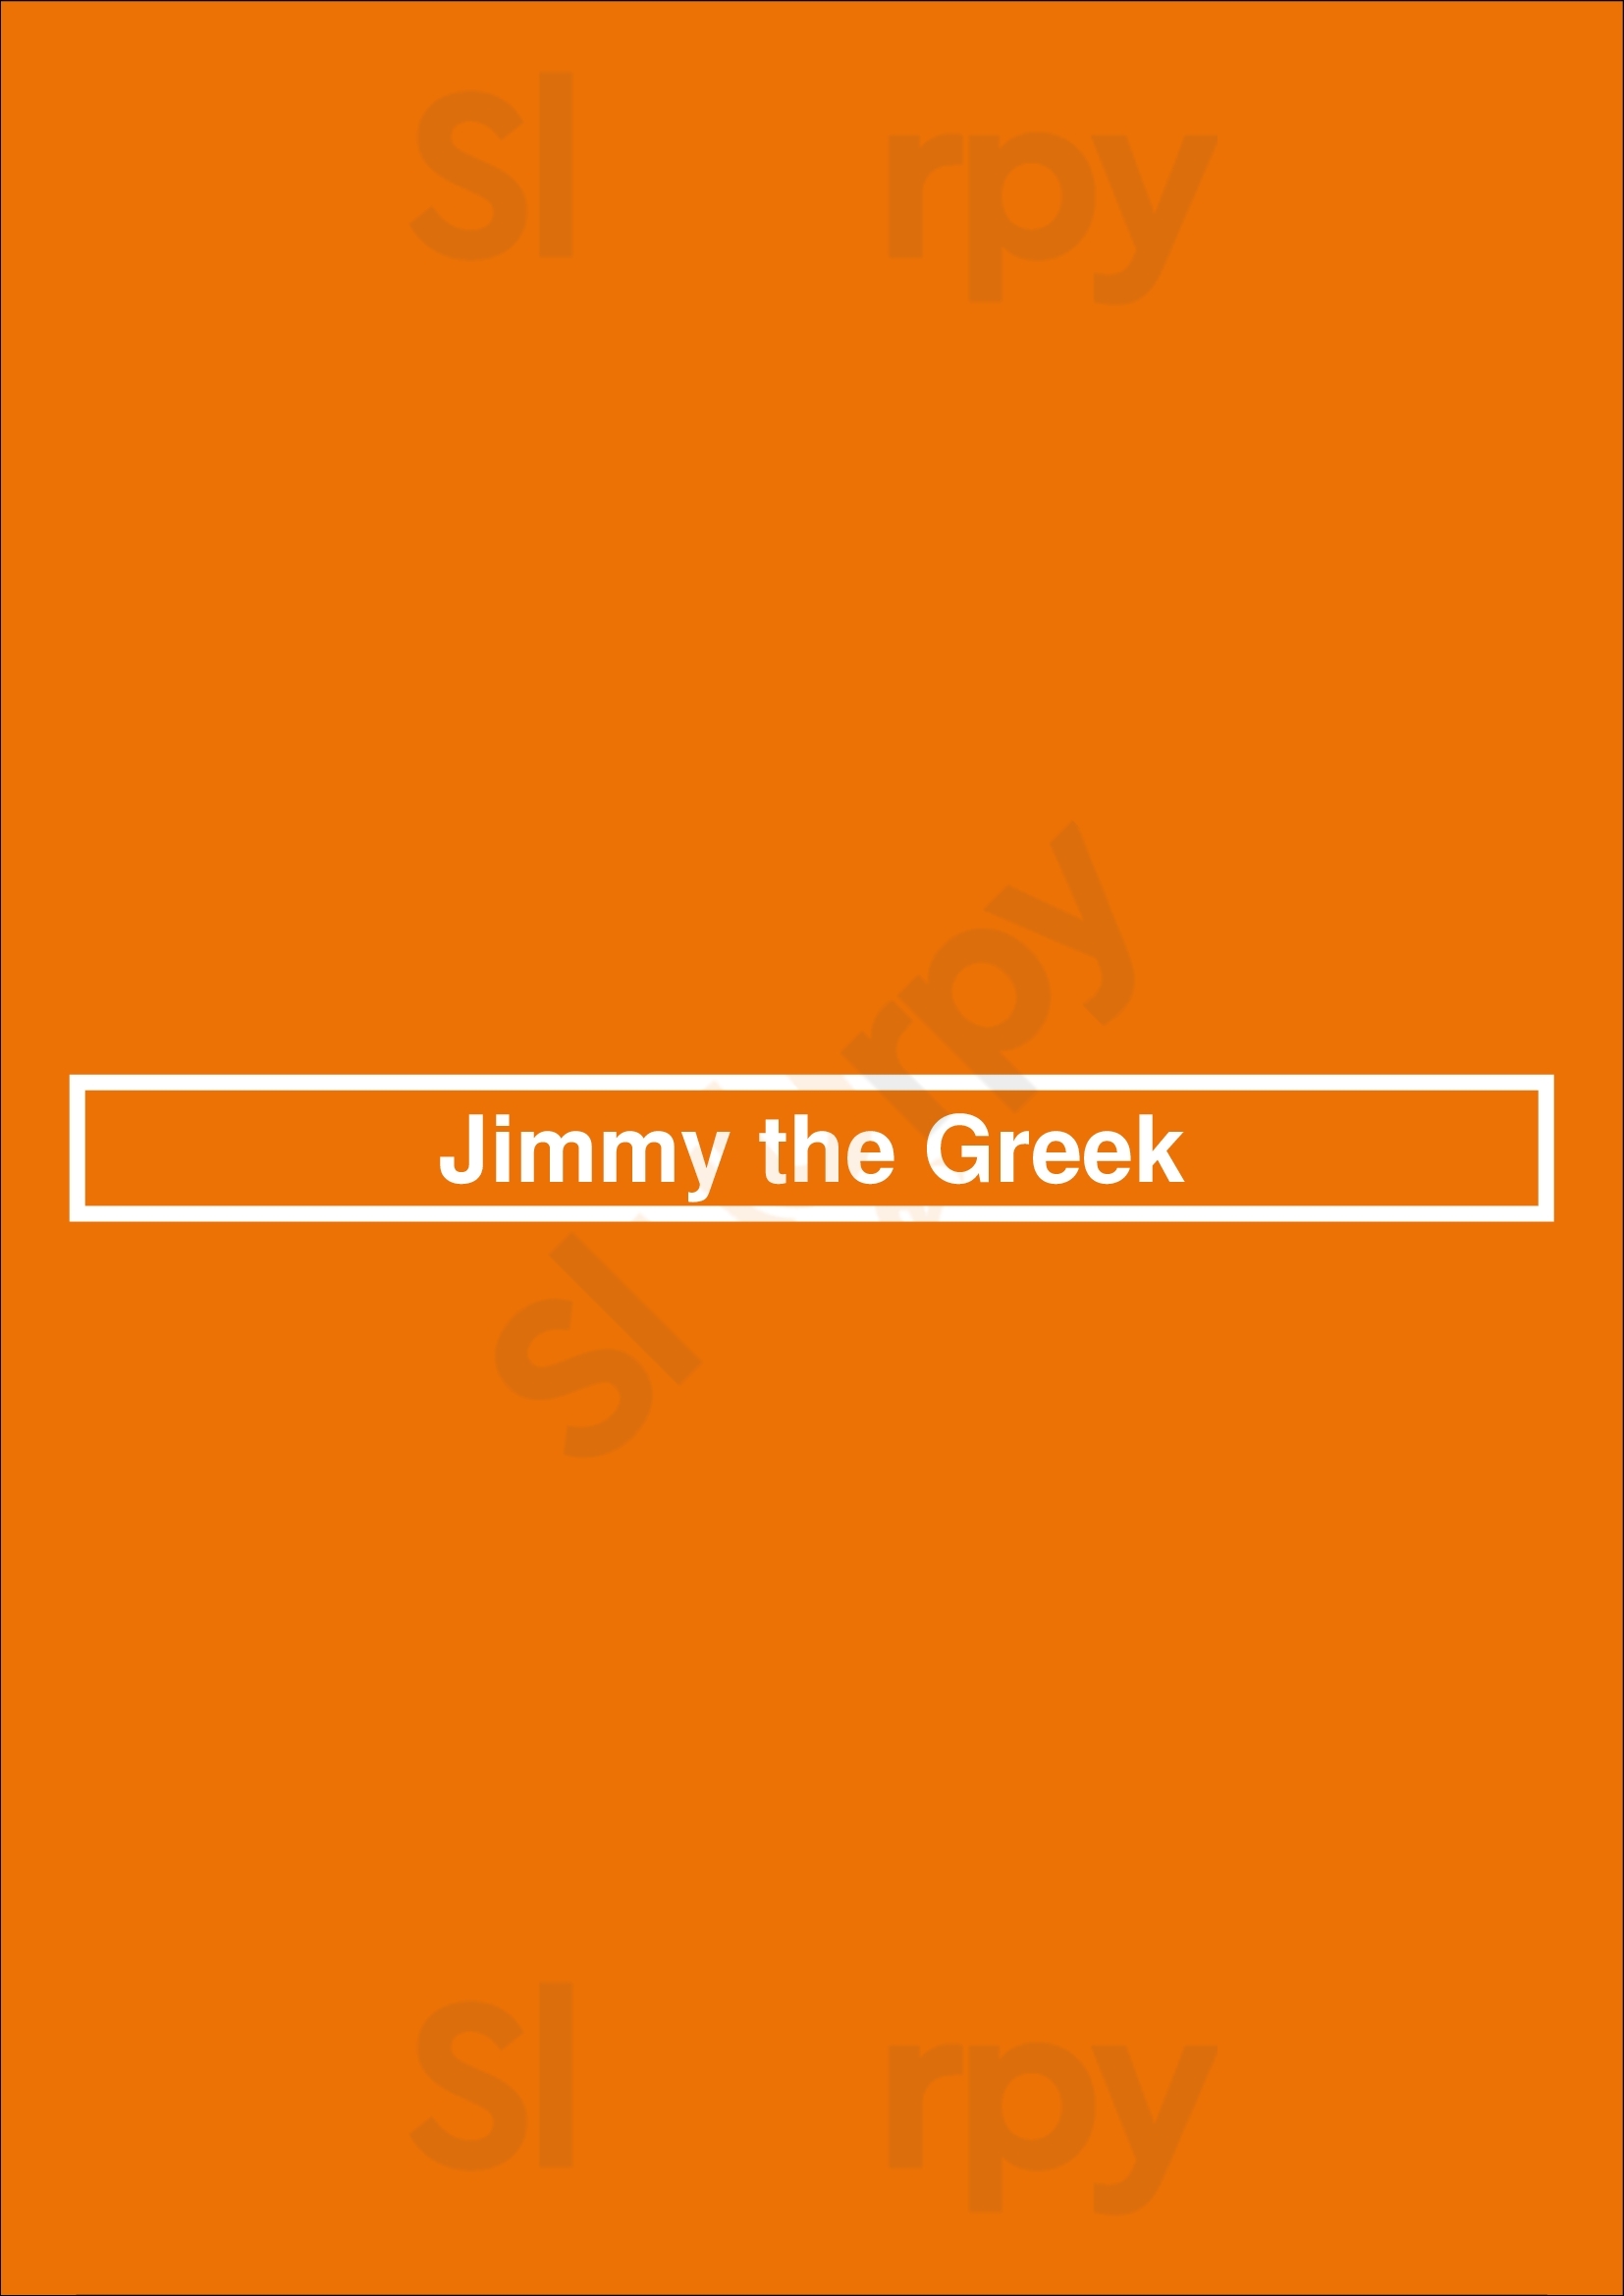 Jimmy The Greek Ottawa Menu - 1